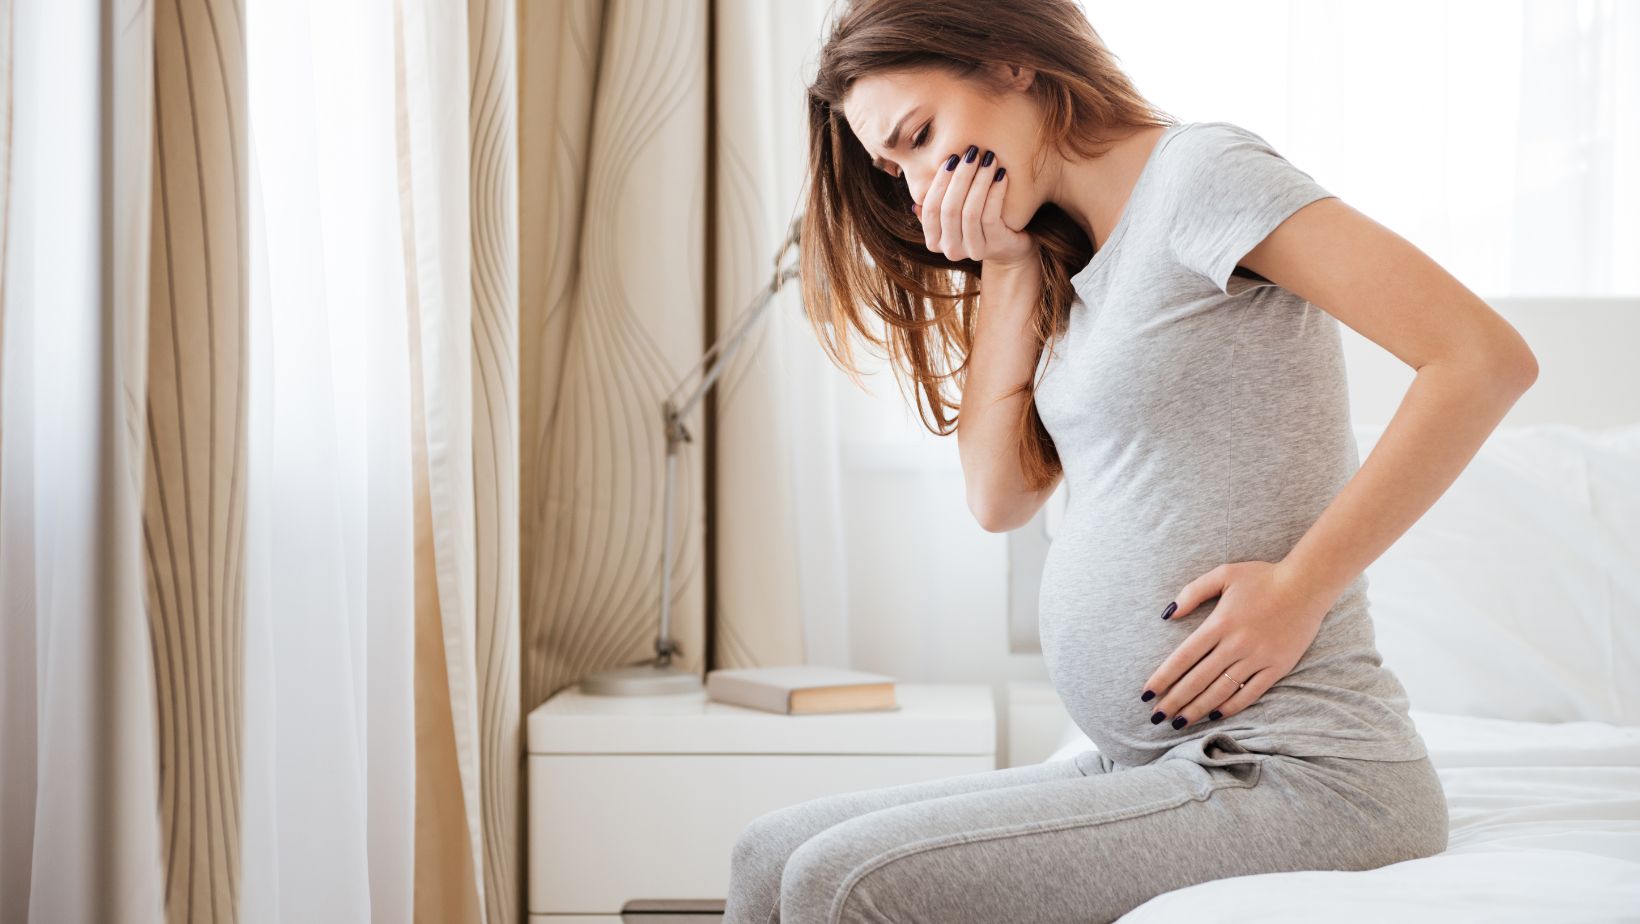 Artigo - Êmese gravídica (Enjôos da gravidez): Como e porque ocorrem os enjôos na mulher grávida